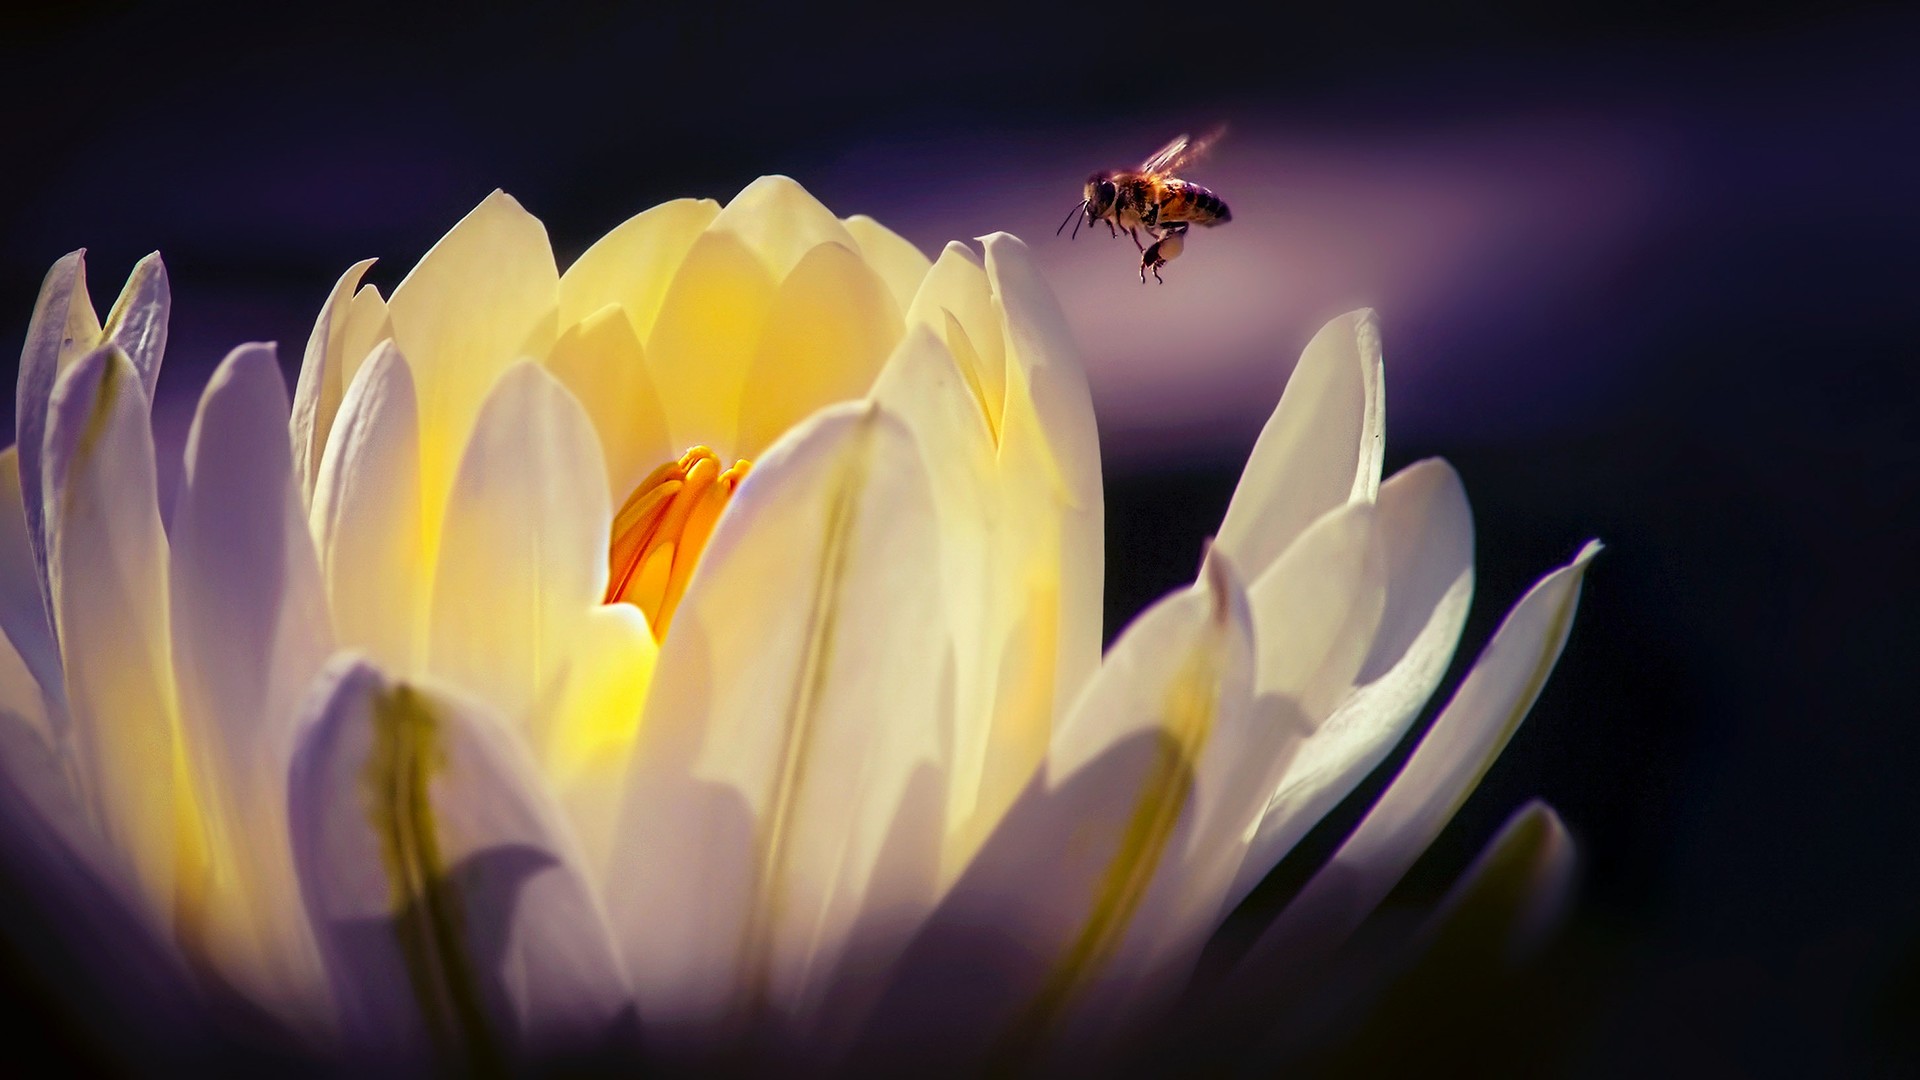 蜜蜂与花朵和谐共存